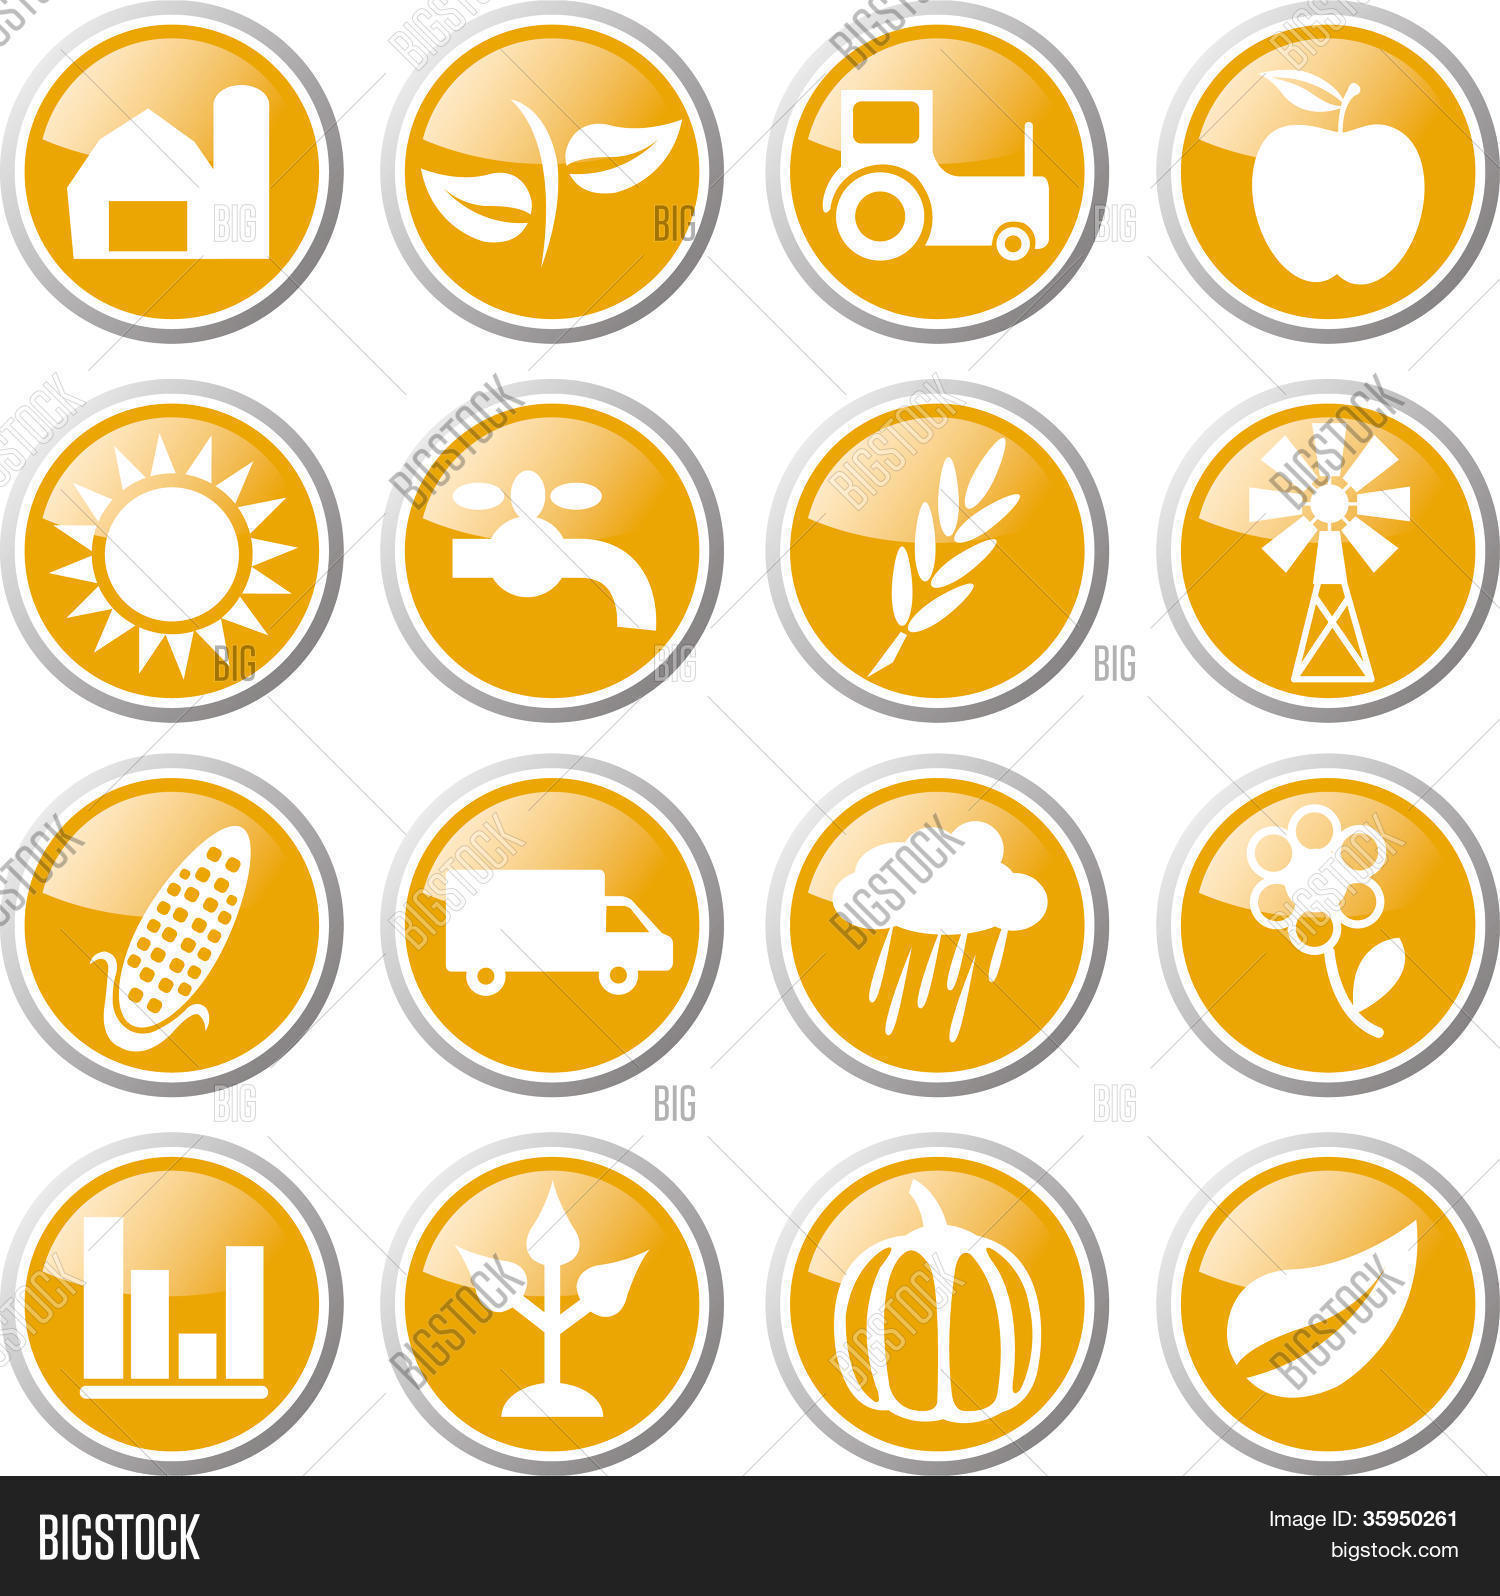 Farmland icon set Vector | Free Download